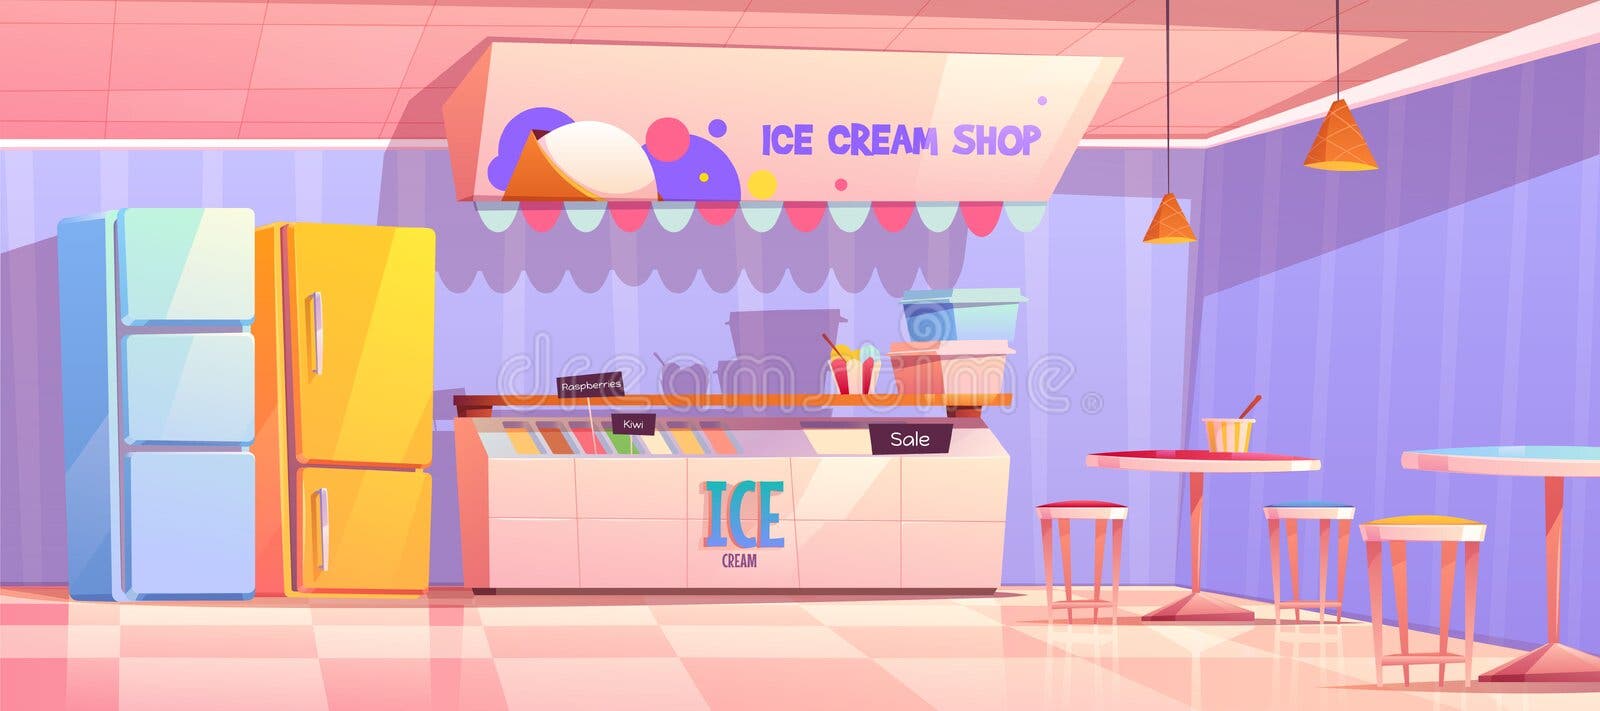 Small size ice cream shop interior 3D design ideas